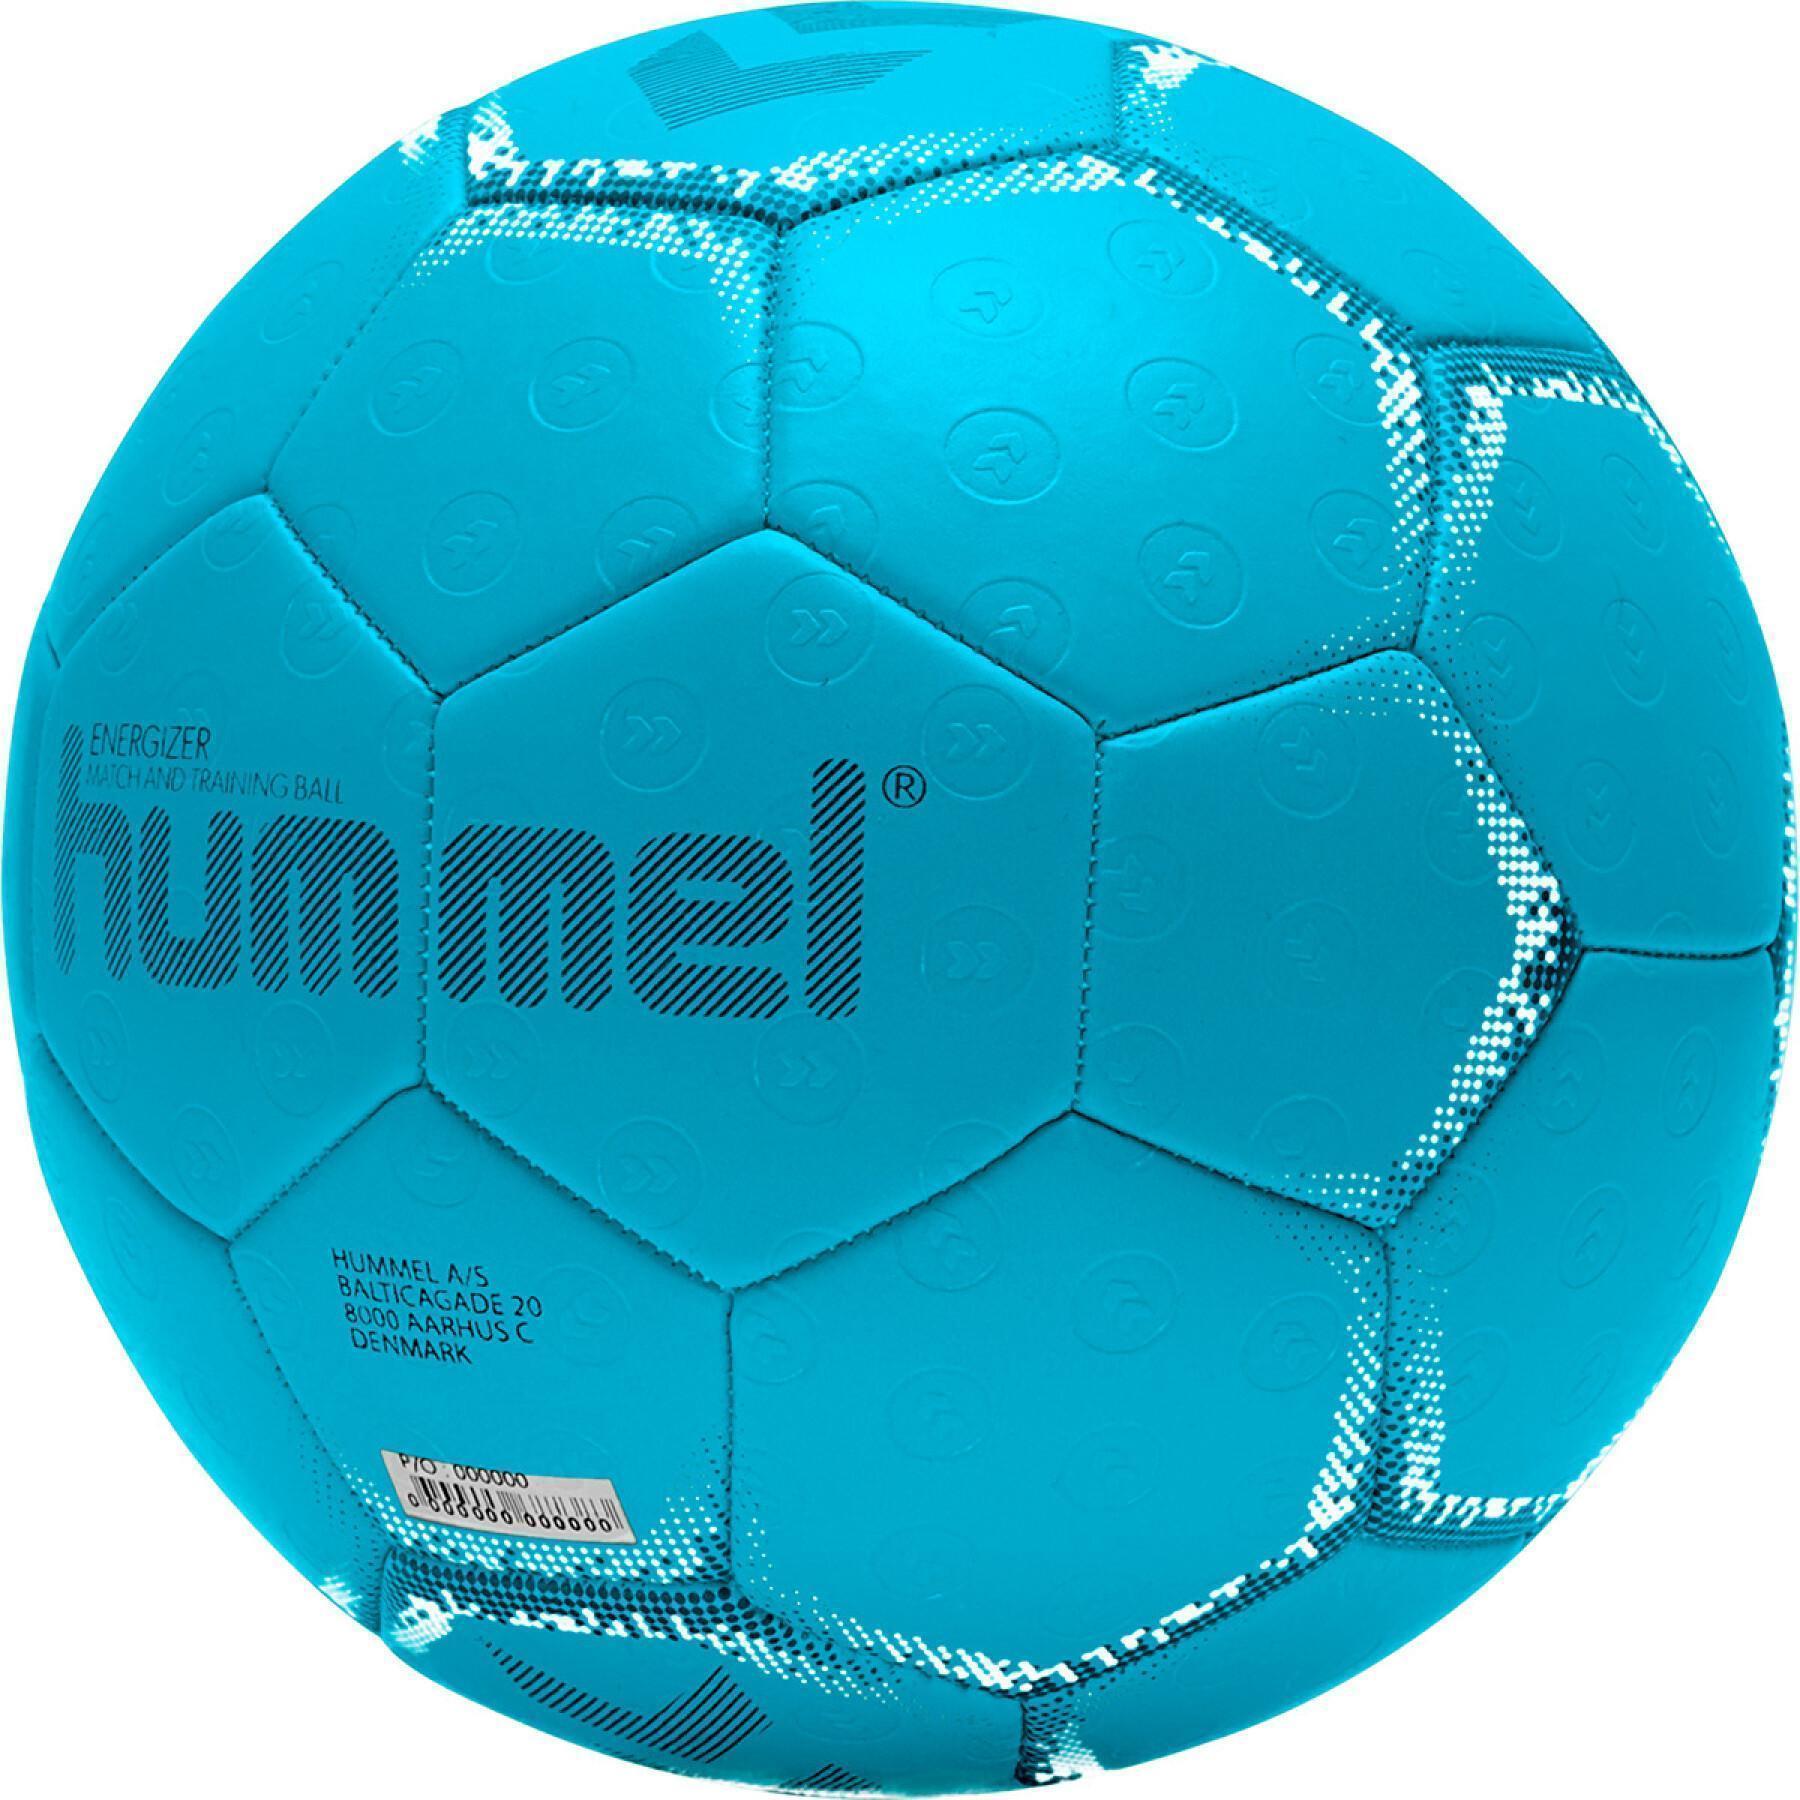 Handballs Hummel Handball Brands - - - Hummel hb Energizer